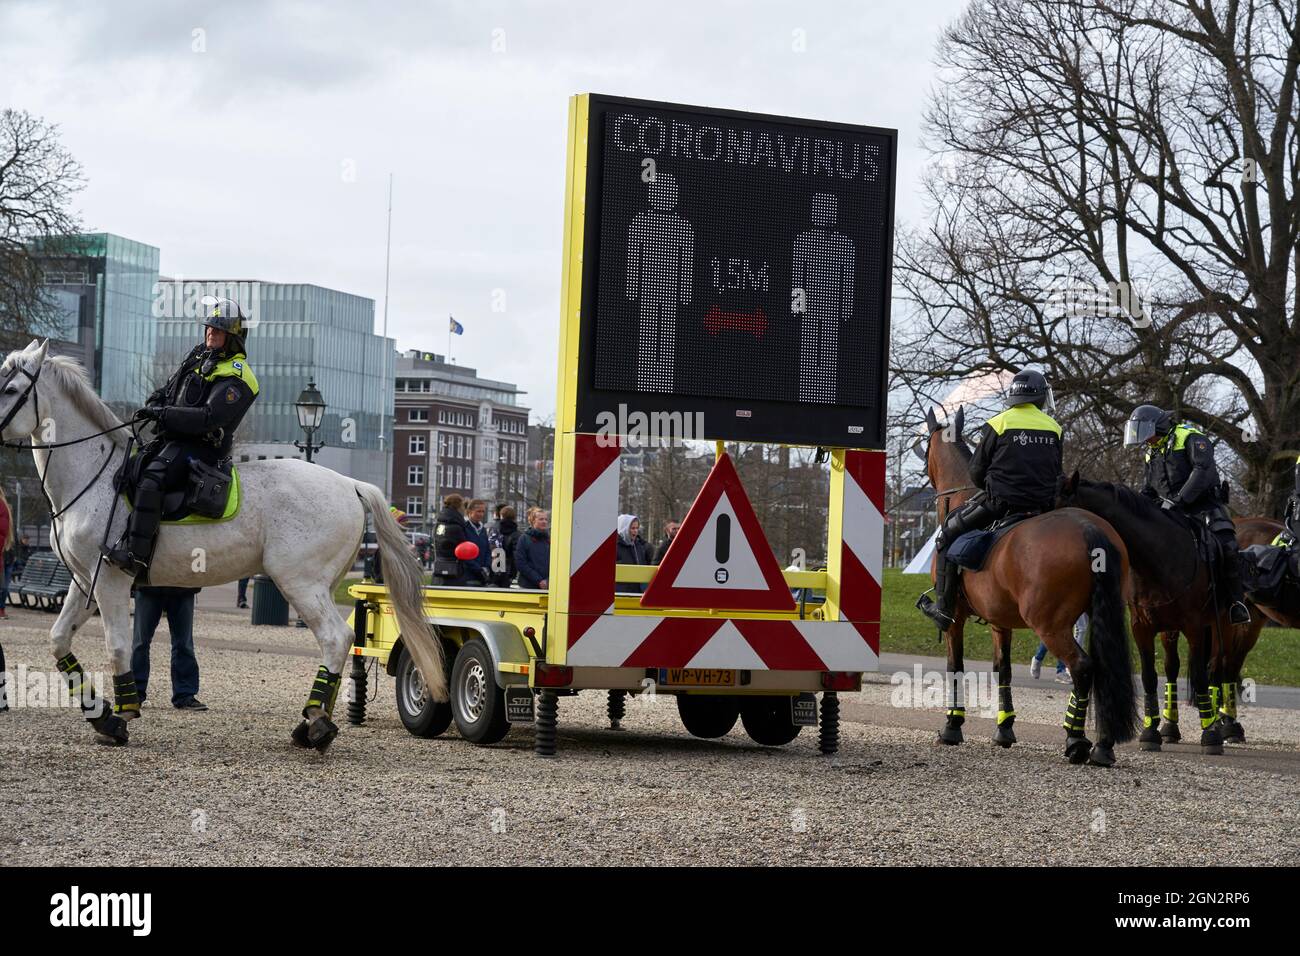 La polizia a cavallo si prepara ad intervenire in una manifestazione anti-vaccino. Foto Stock